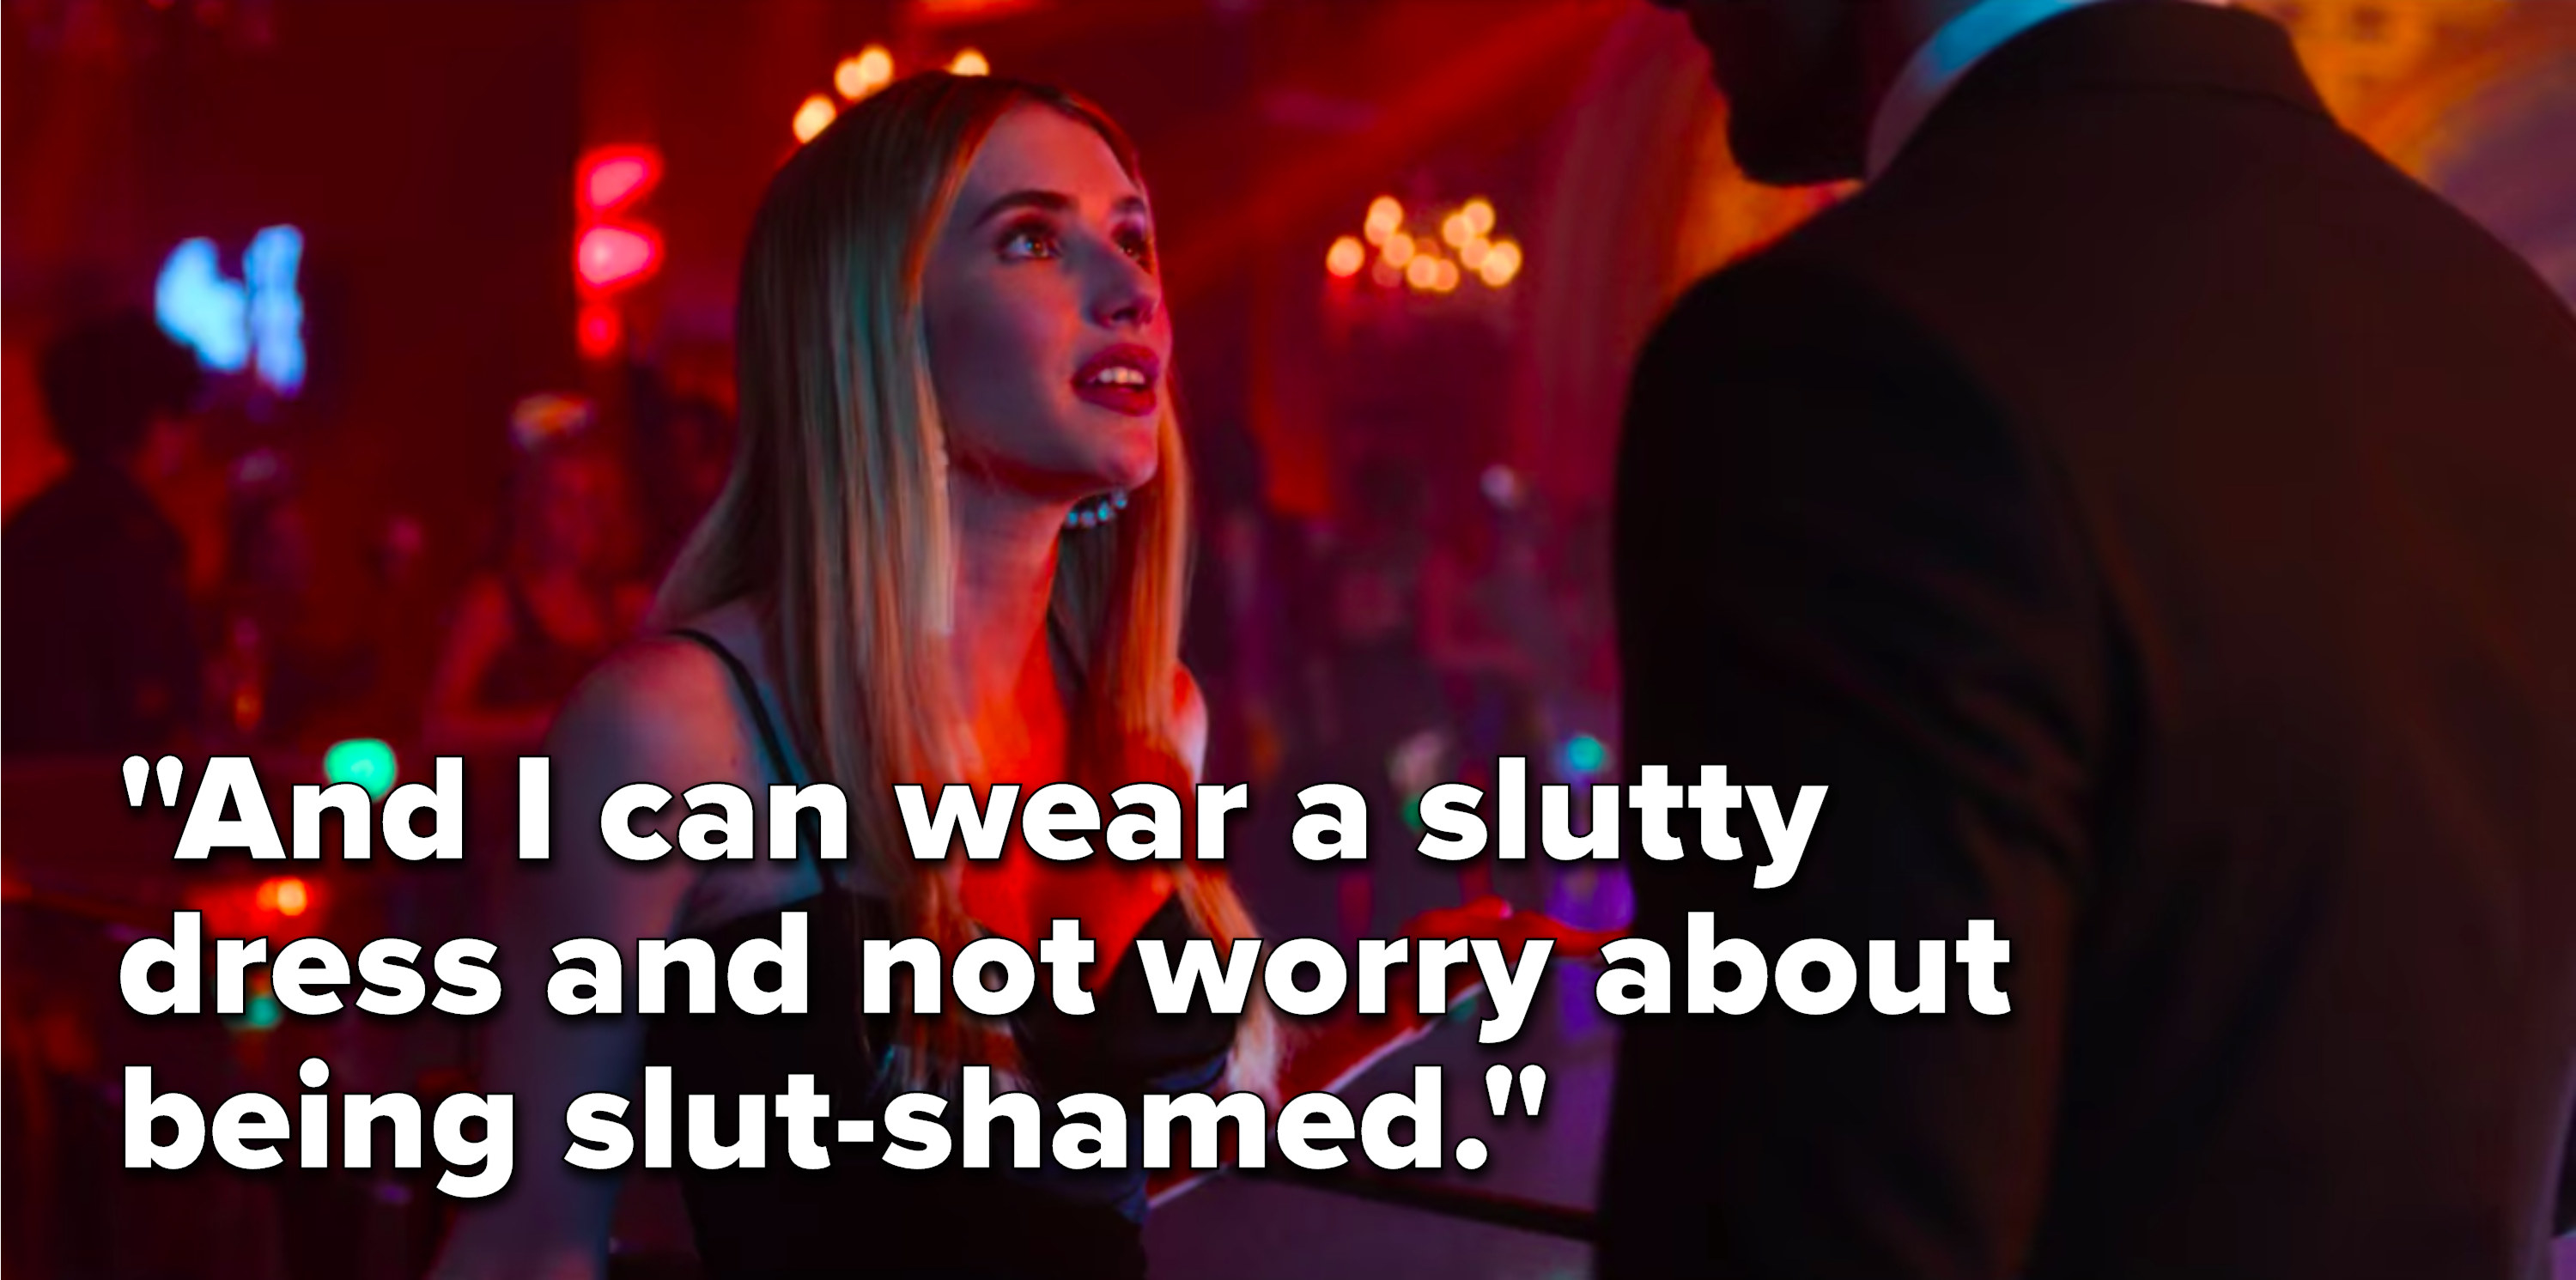 斯隆说,“我可以穿性感的衣服,不用担心被slut-shamed"